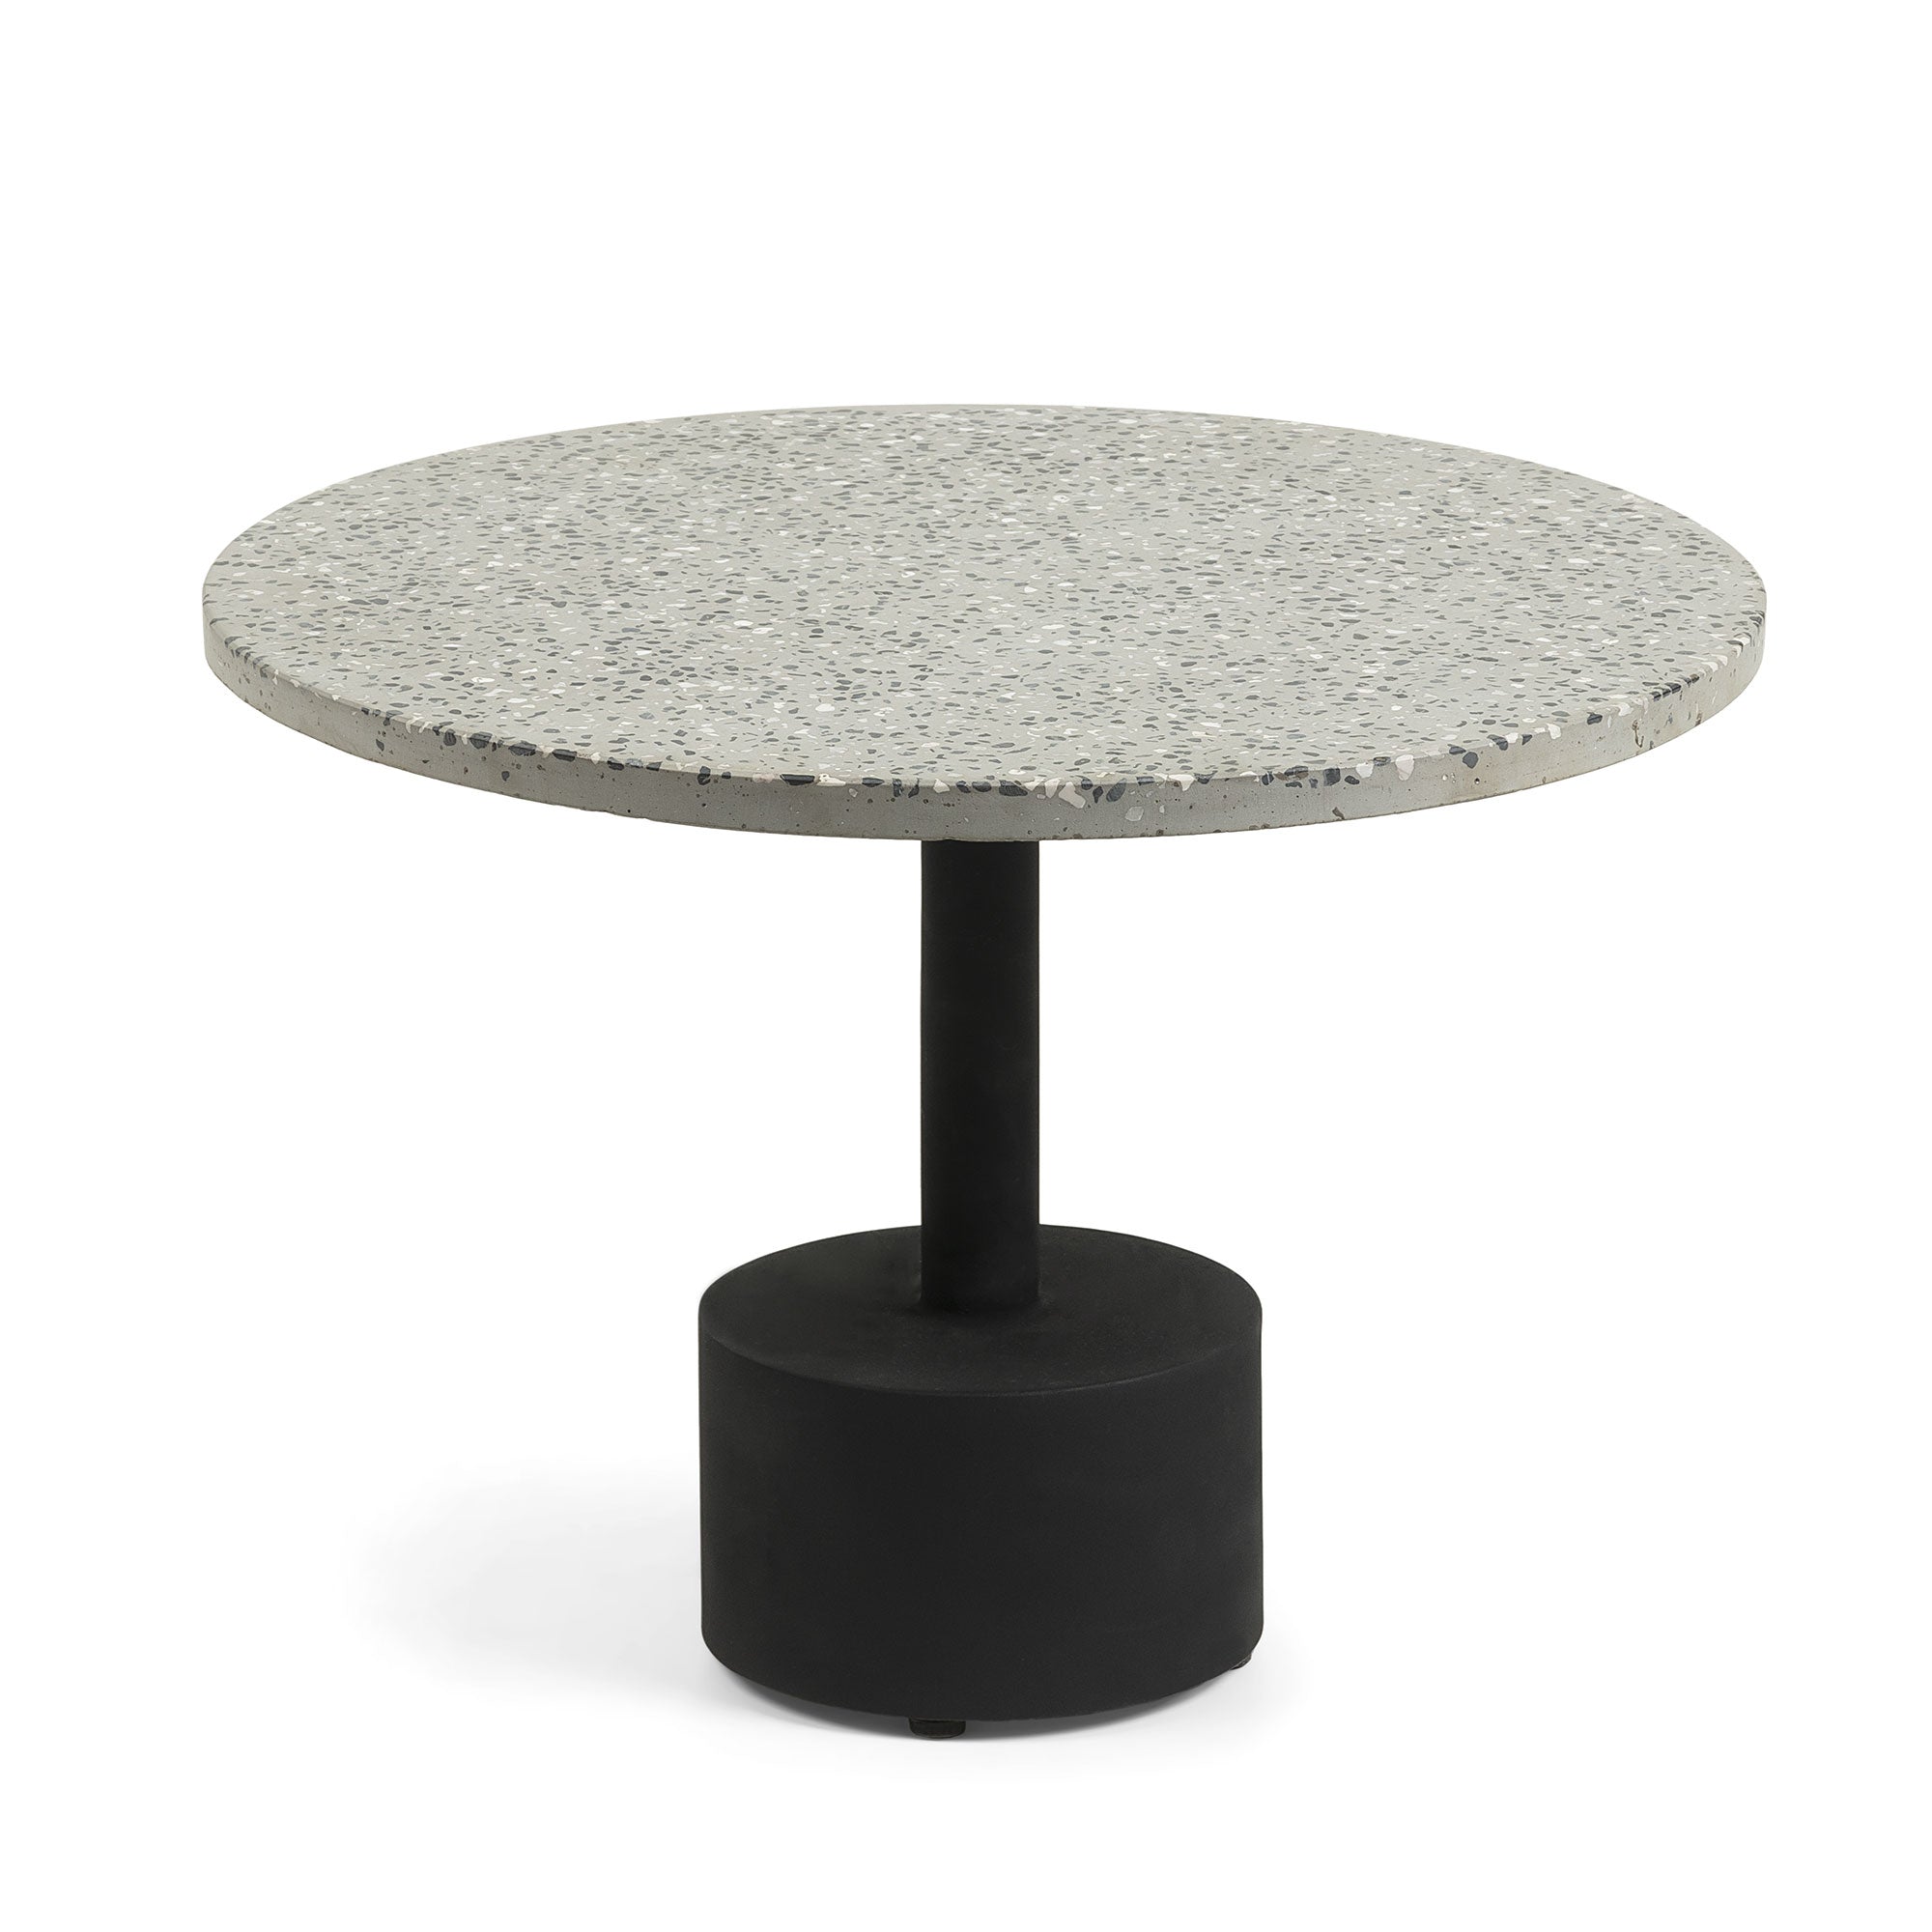 Delano szürke terrazzo kisasztal fekete acéllábakkal, Ø 55 cm